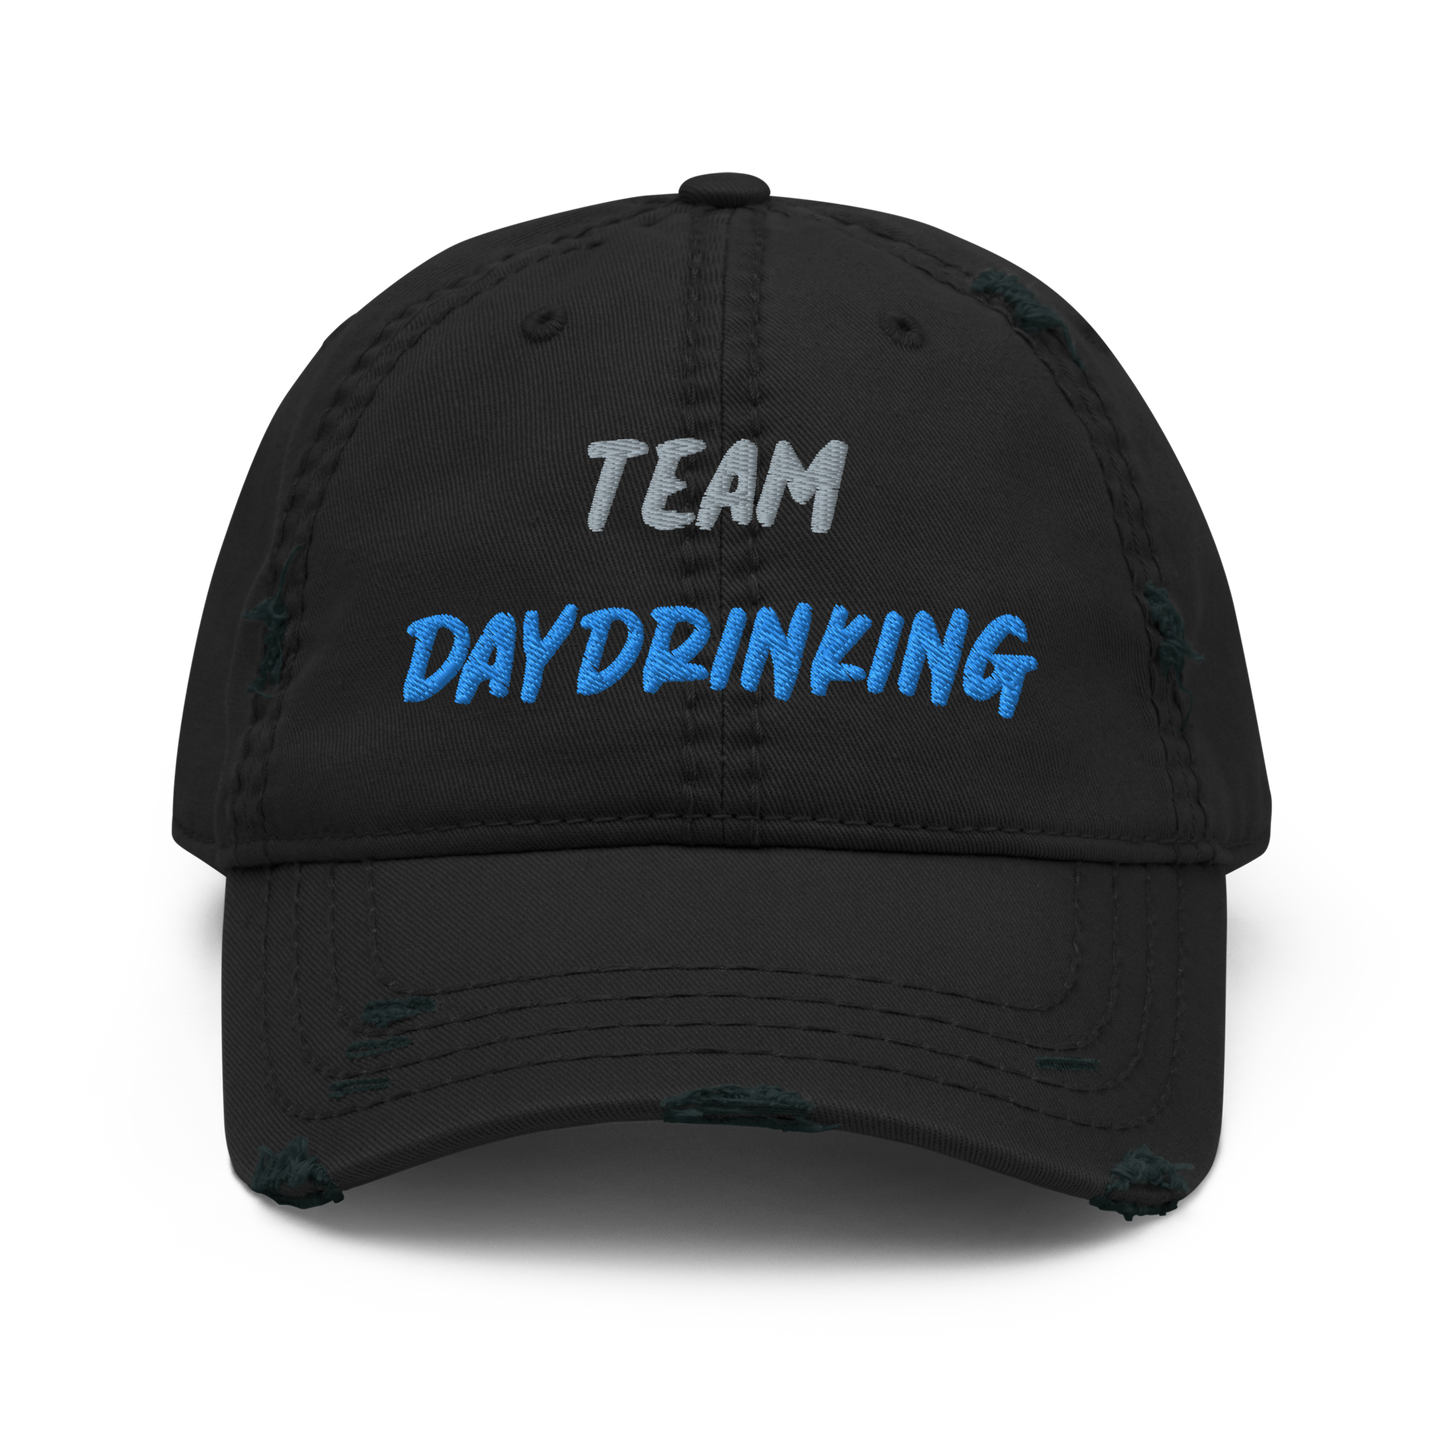 Team Daydrinking Distressed Dad Hat